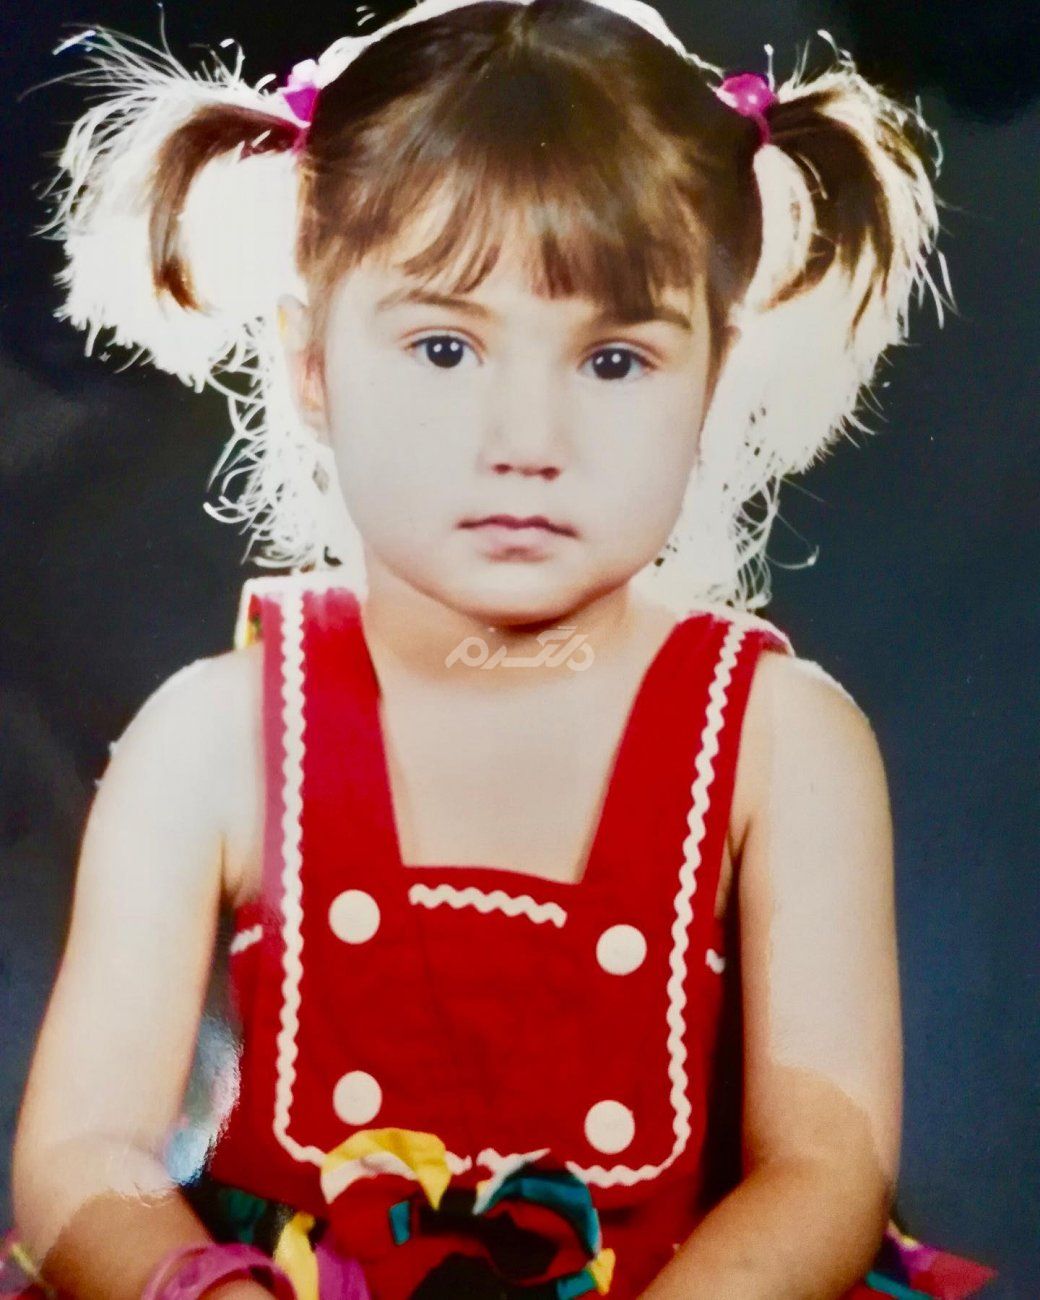 کودکی یکی از جذاب ترین و معروفترین بازیگران سریال ستایش با موی بور و چشمان بادومی !!